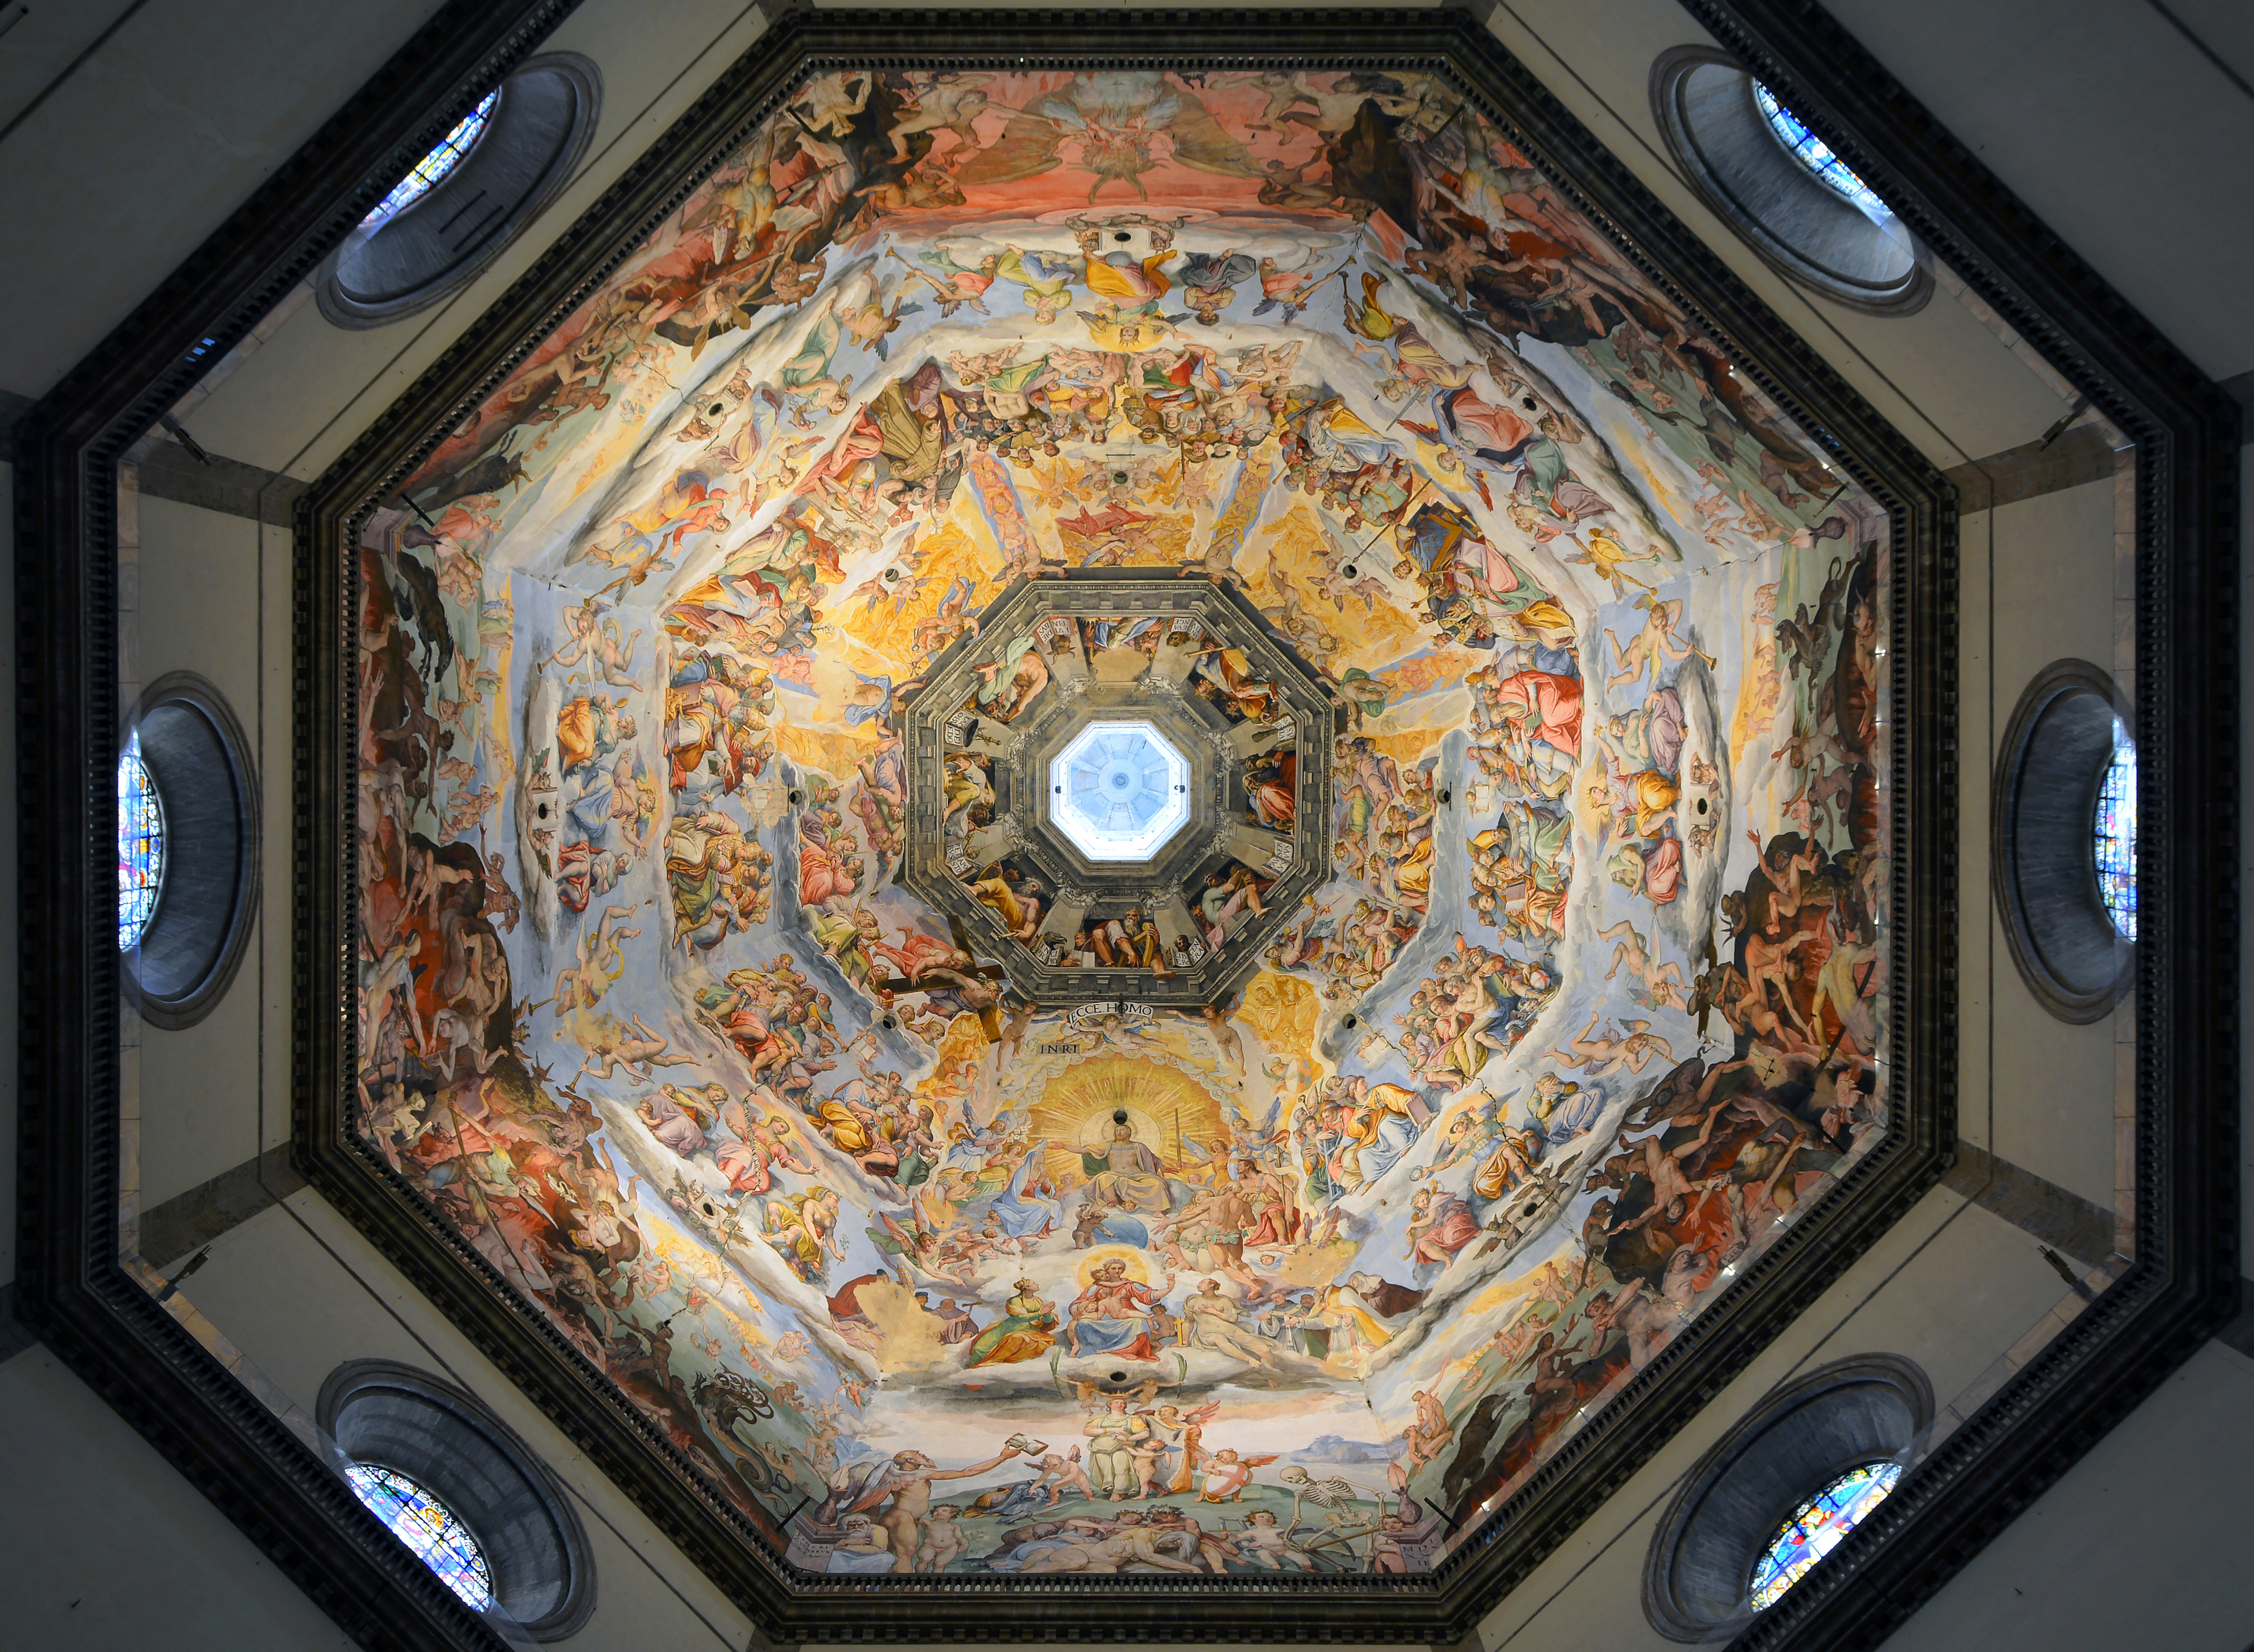 Dome of Cattedrale di Santa Maria del Fiore (Florence)